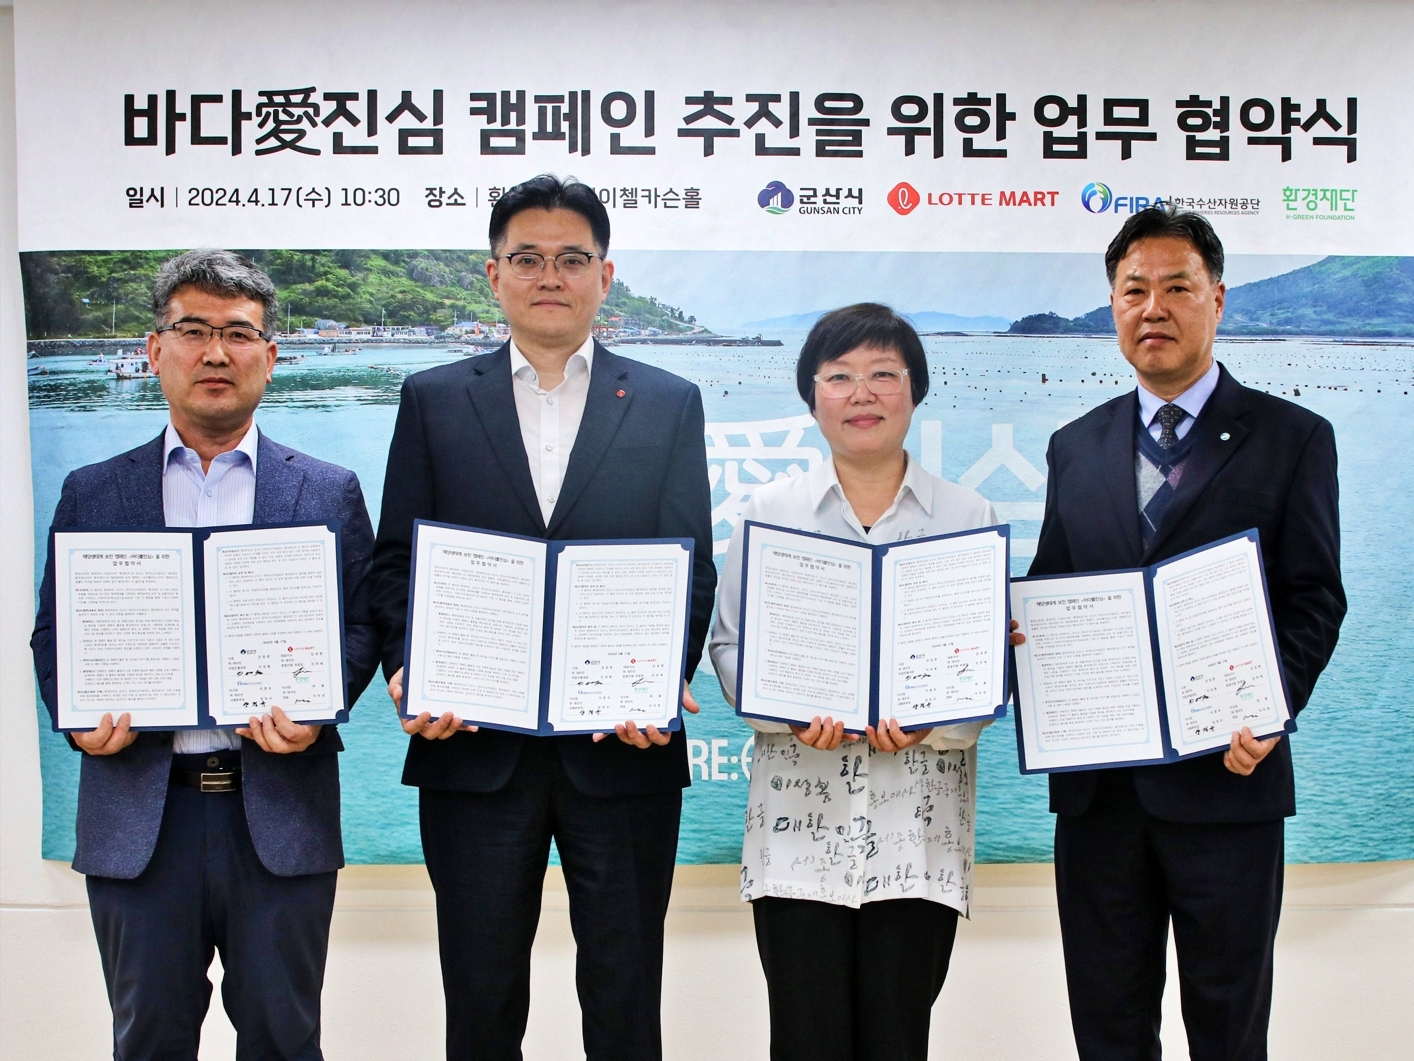 롯데마트와 슈퍼, 해양생태계 보전 위한 ‘바다愛(애) 진심’ 업무협약 체결